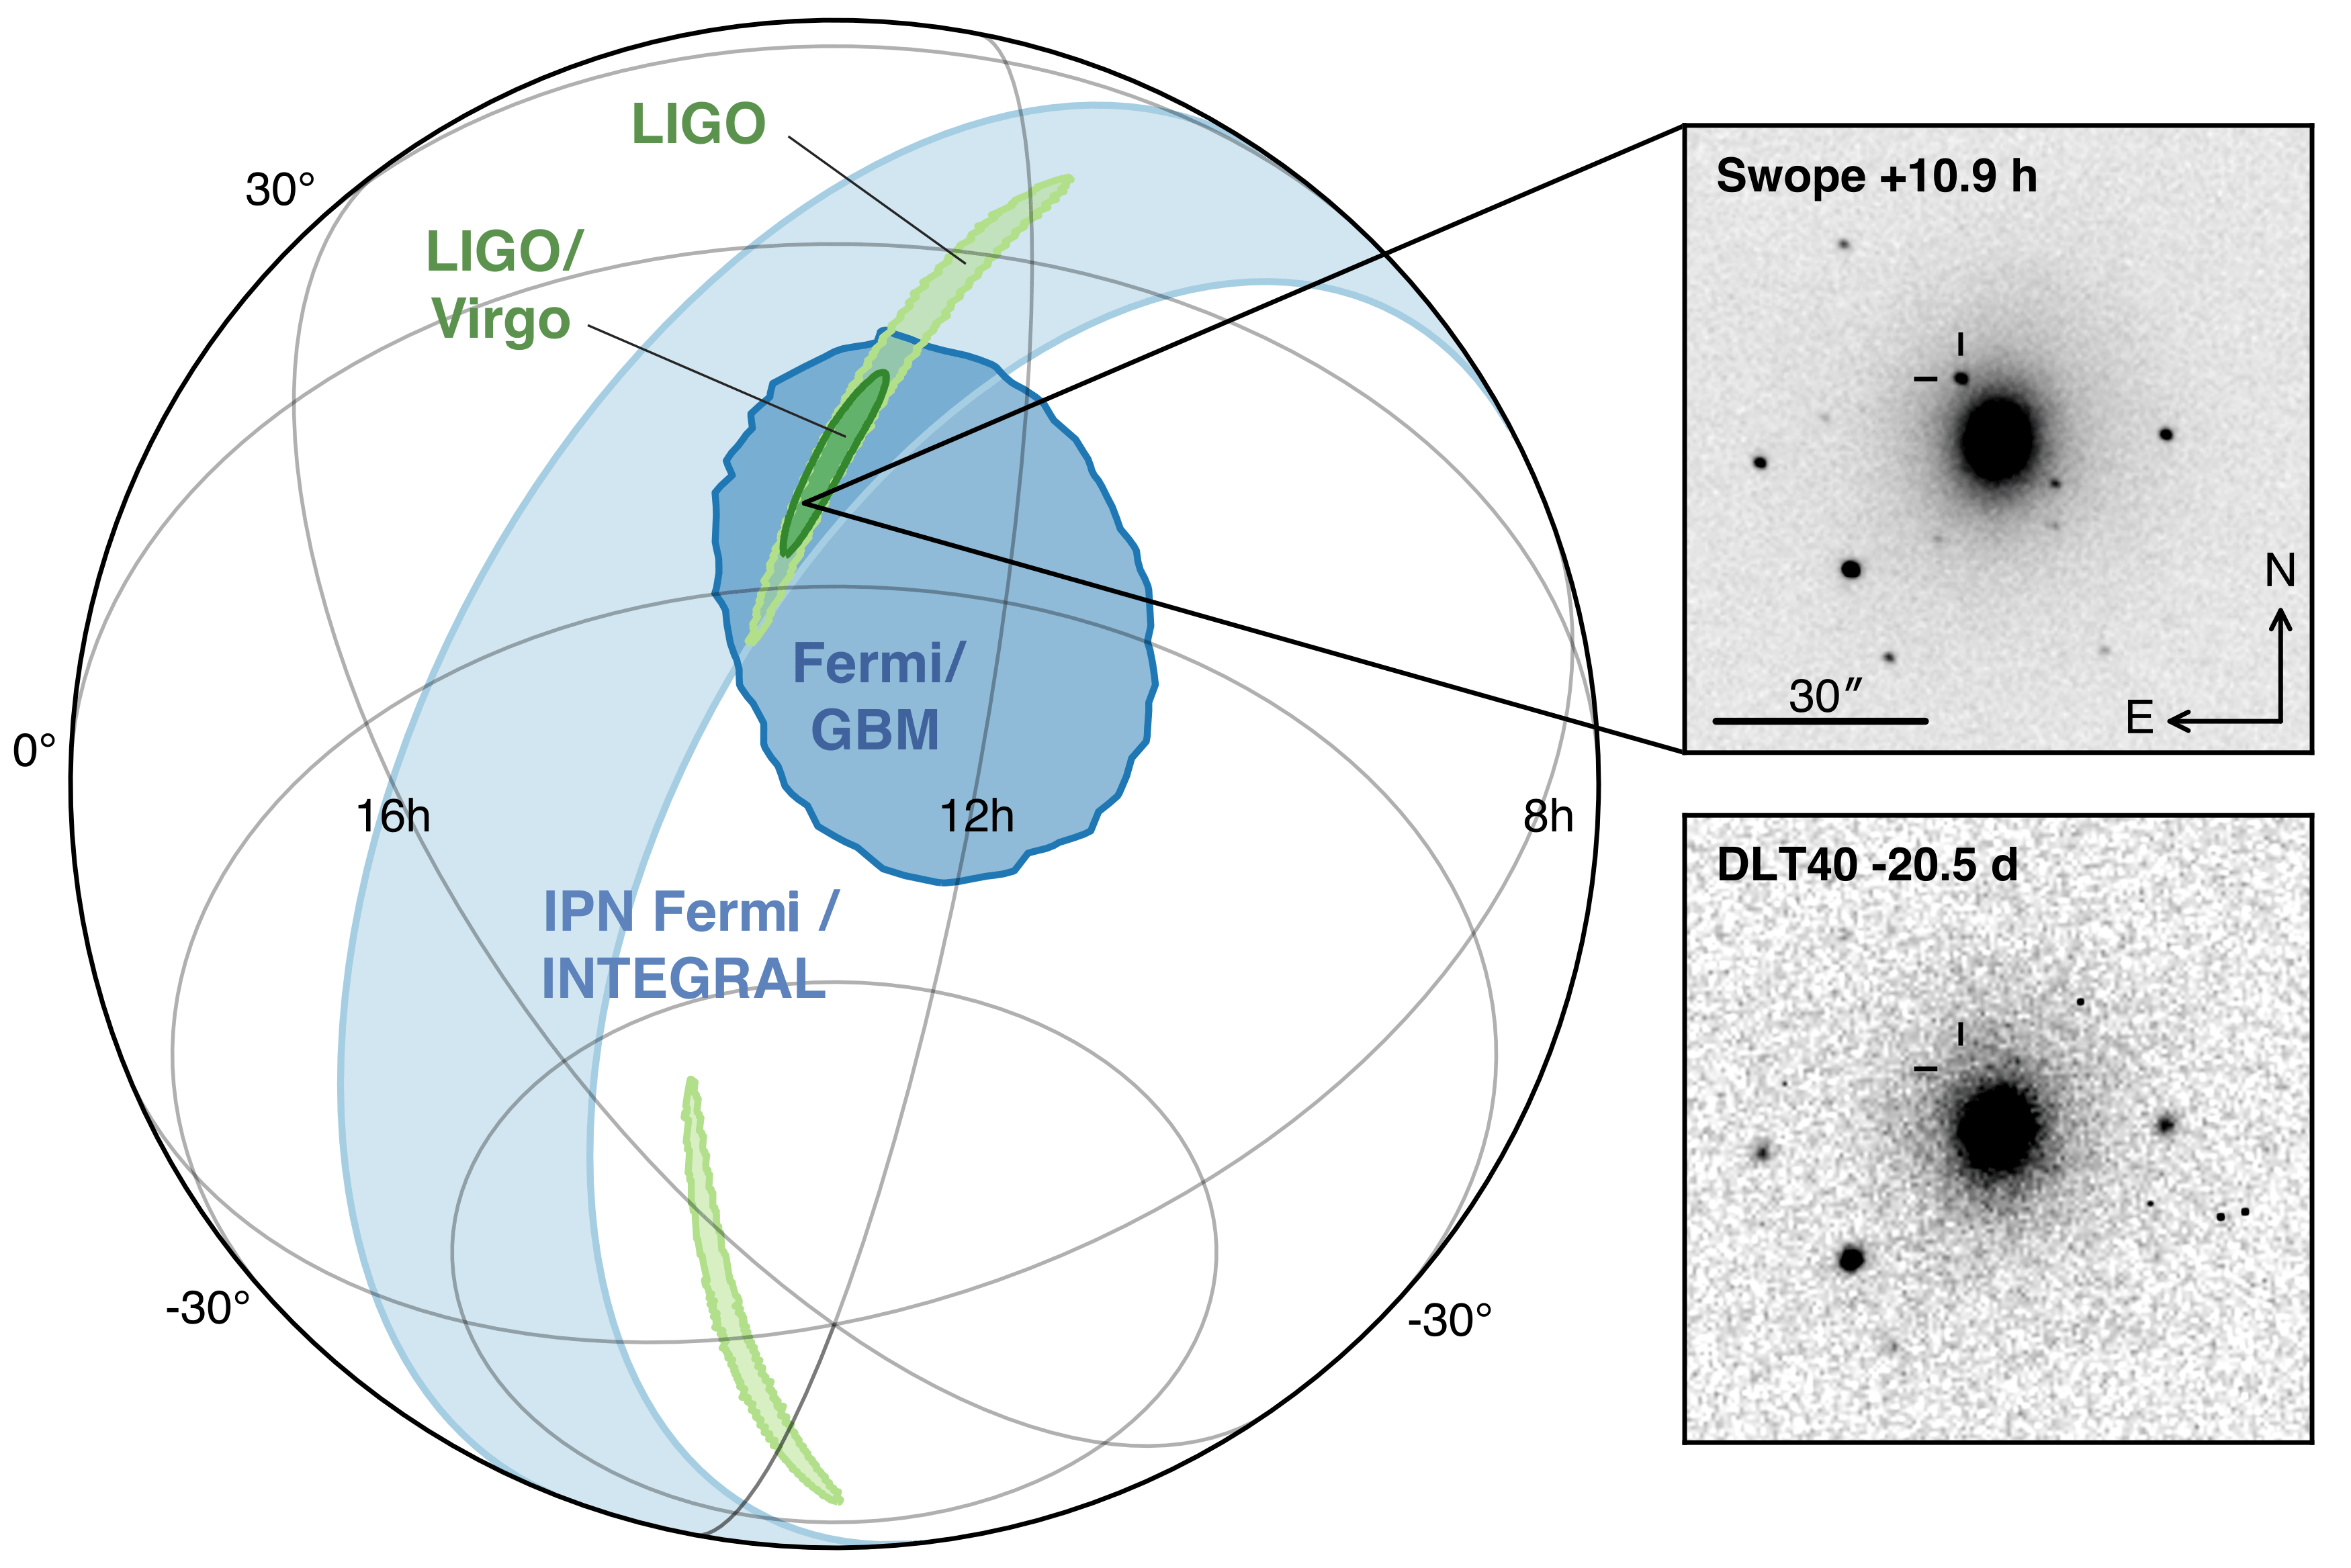 LIGO/Virgo